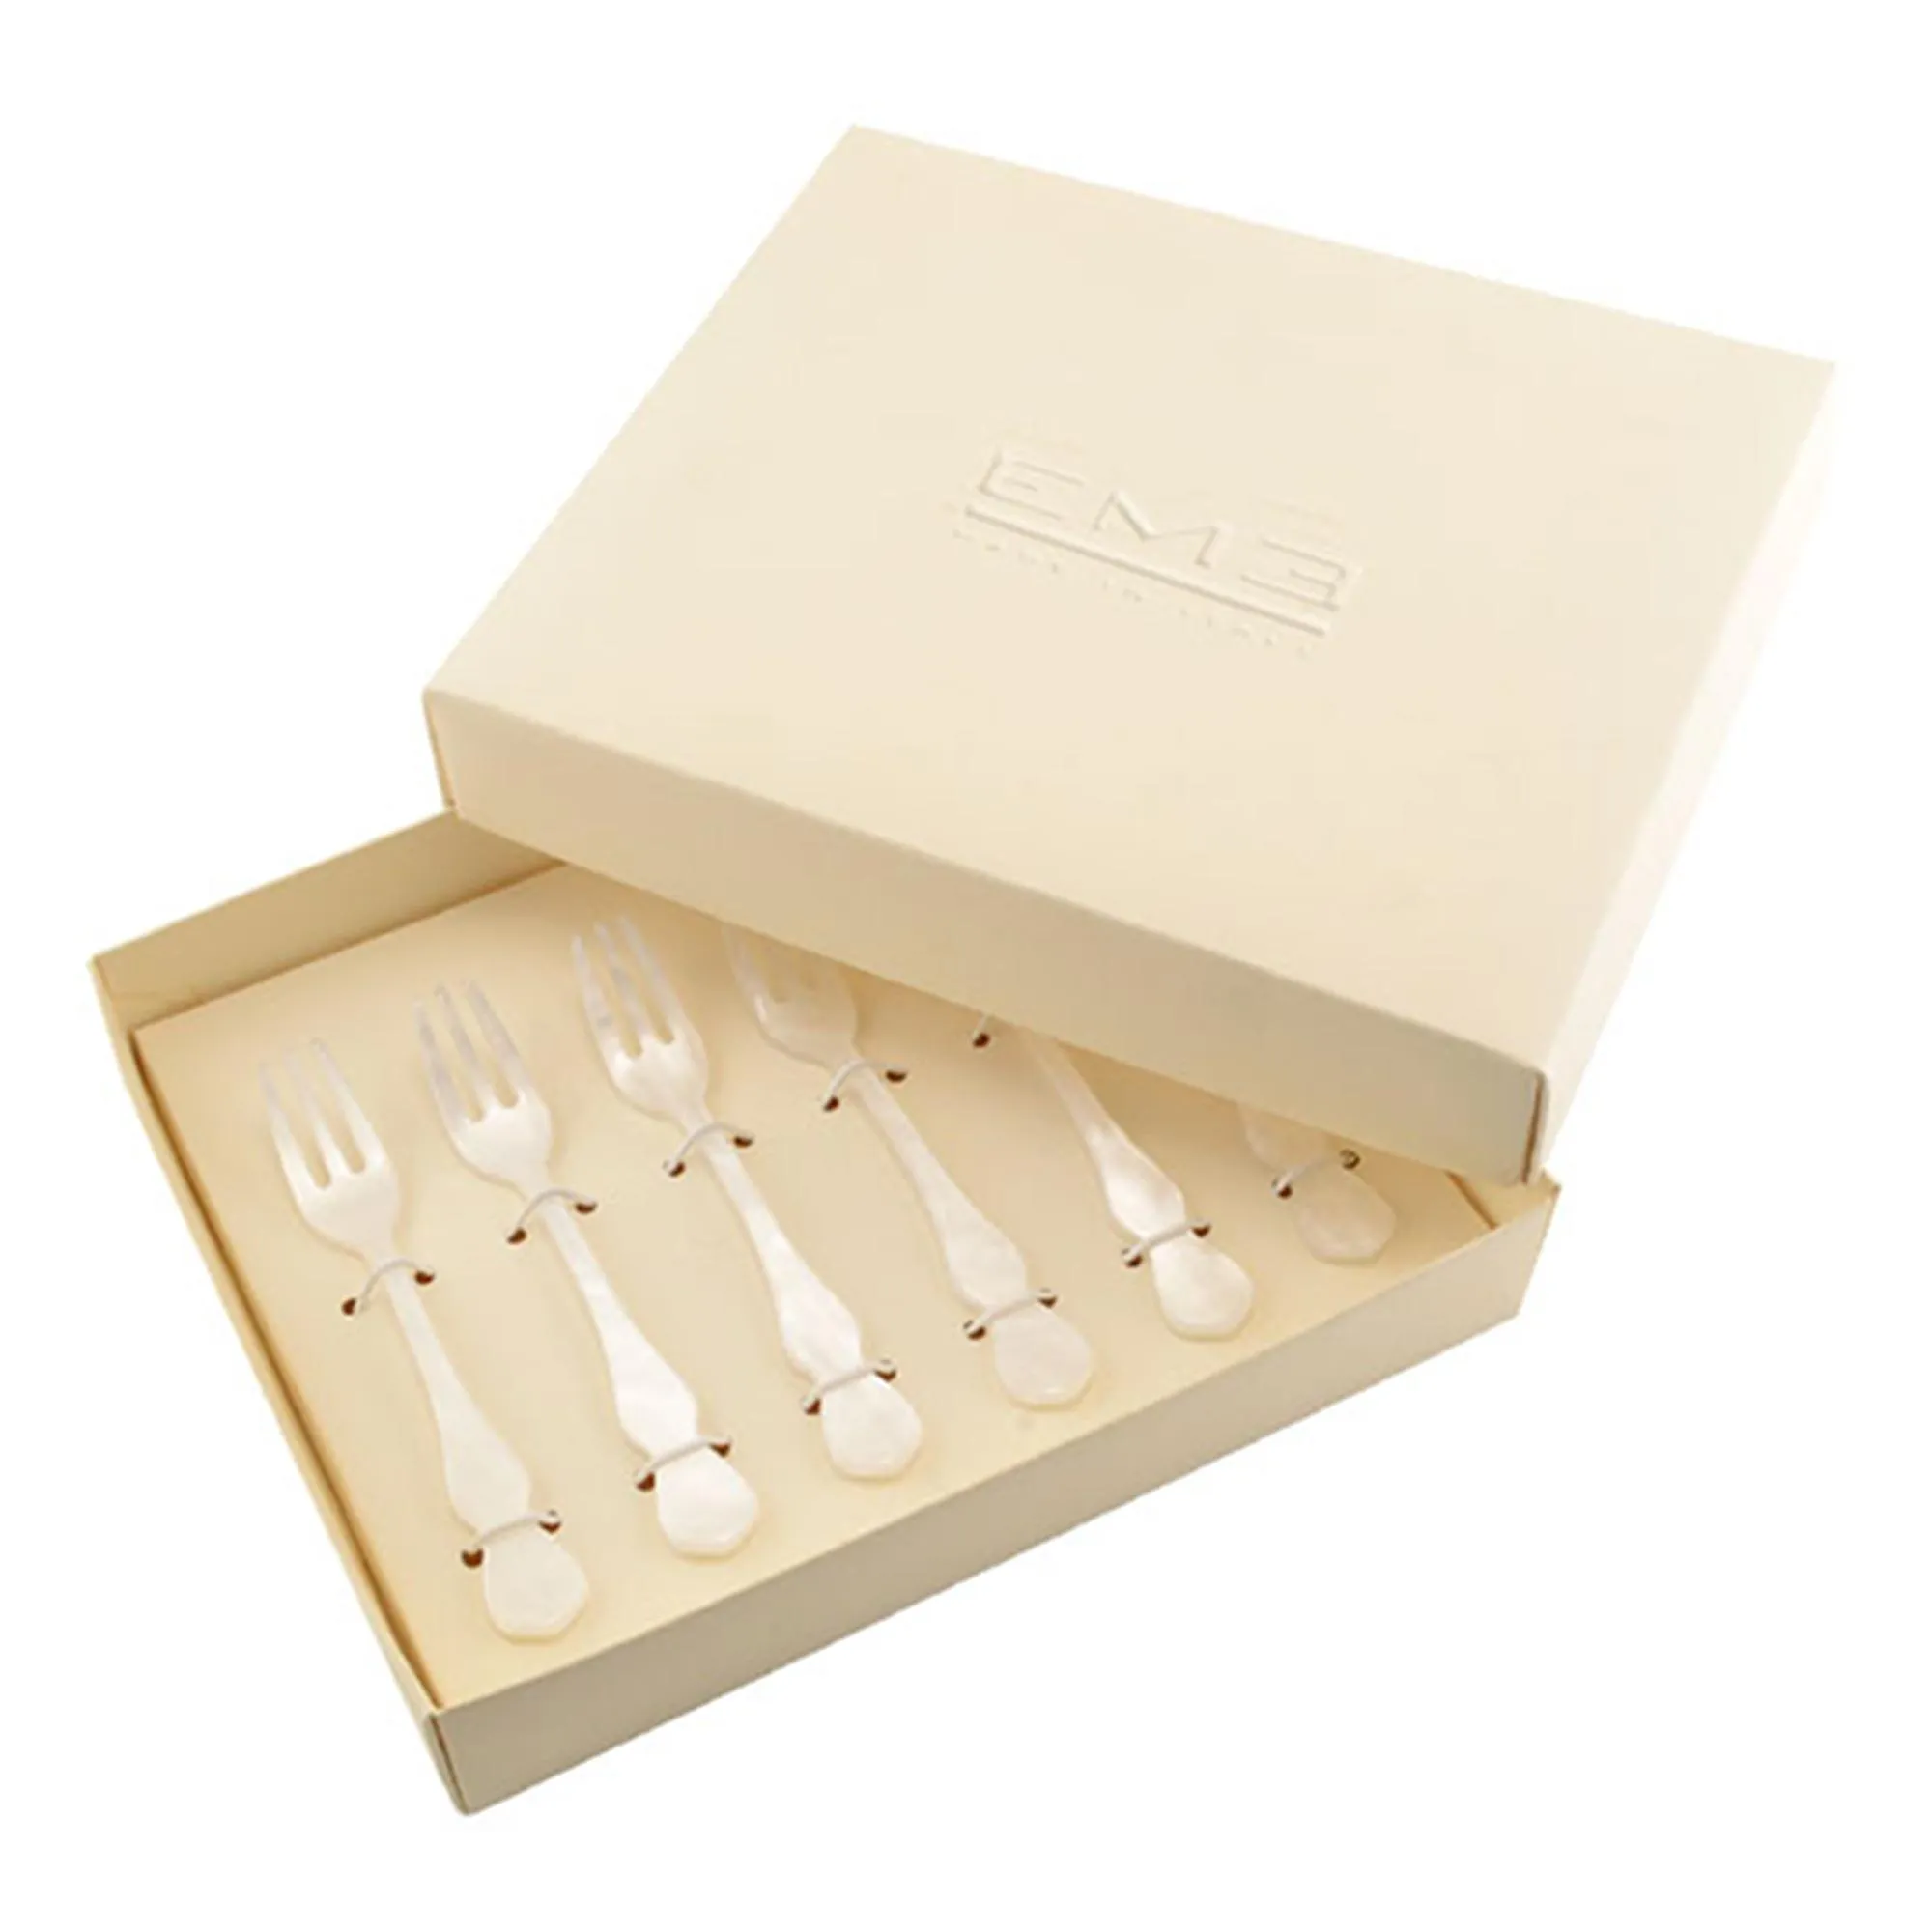 Forchettine dolce in metacrilato CHIC confezione 6 pezzi Perlato Bianco 132 mm in scatola bomboniera